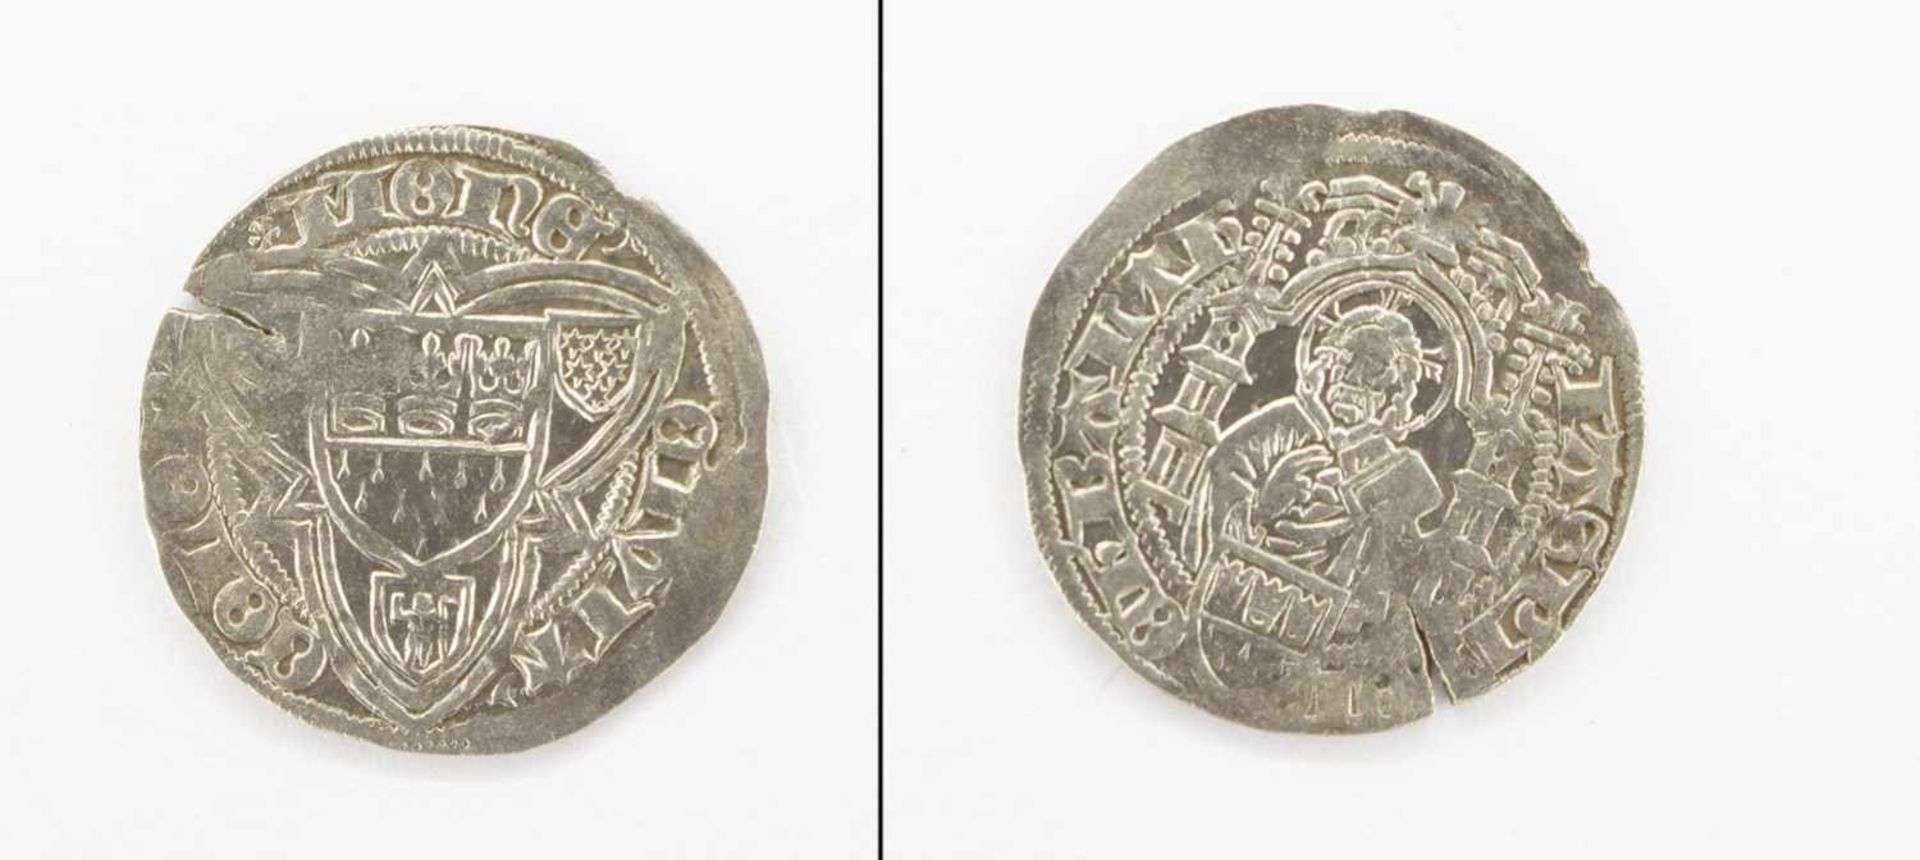 AlbusKöln o.J. (nach 1475), Hlg. 3 Könige, Silber, ss+ mit Schrötlingsriß